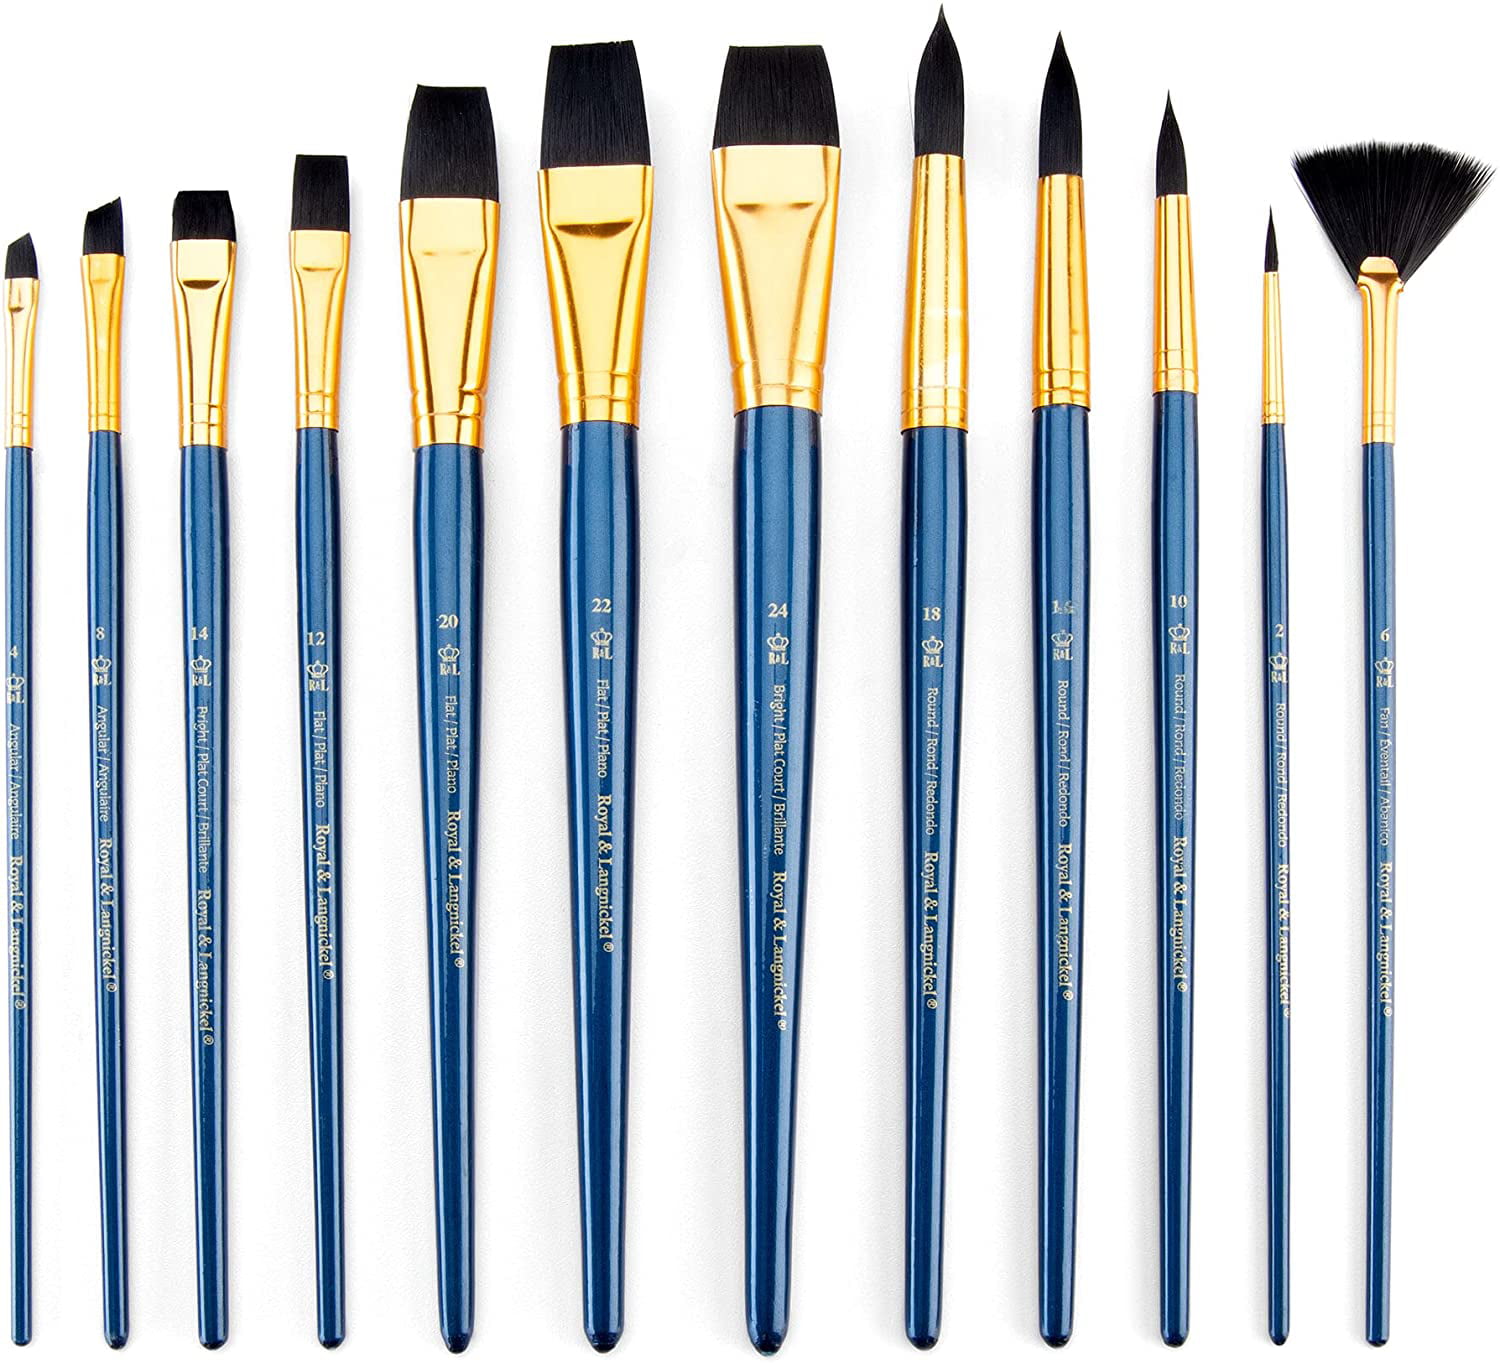 Royal & Langnickel - 12pc Artist Brush Set